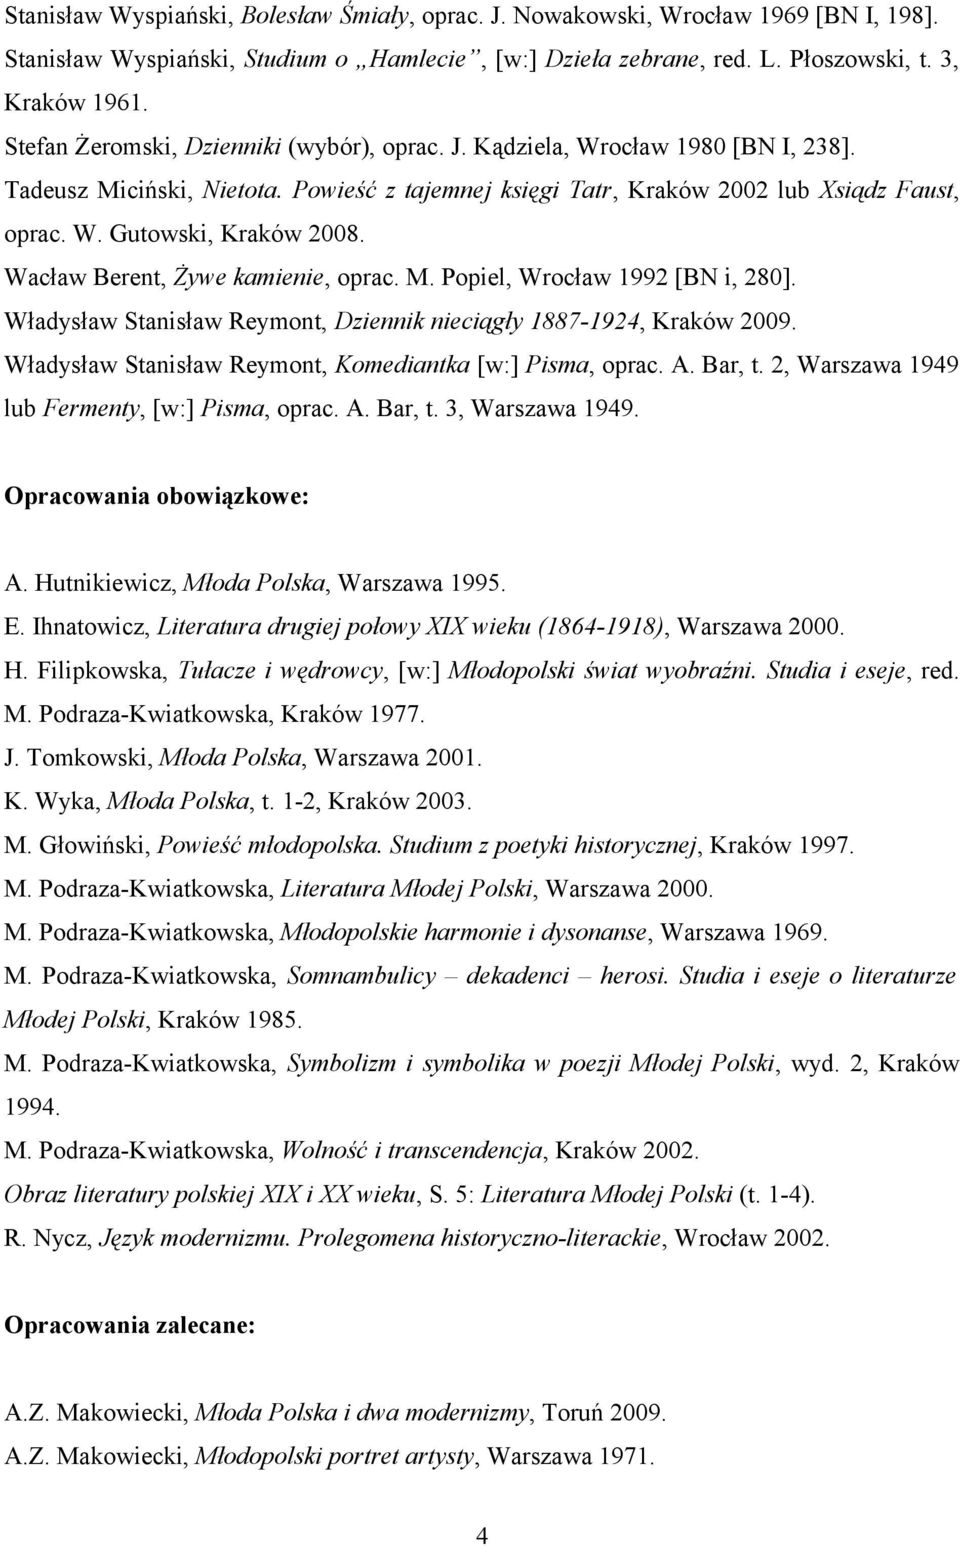 Wacław Berent, Żywe kamienie, oprac. M. Popiel, Wrocław 1992 [BN i, 280]. Władysław Stanisław Reymont, Dziennik nieciągły 1887-1924, Kraków 2009.